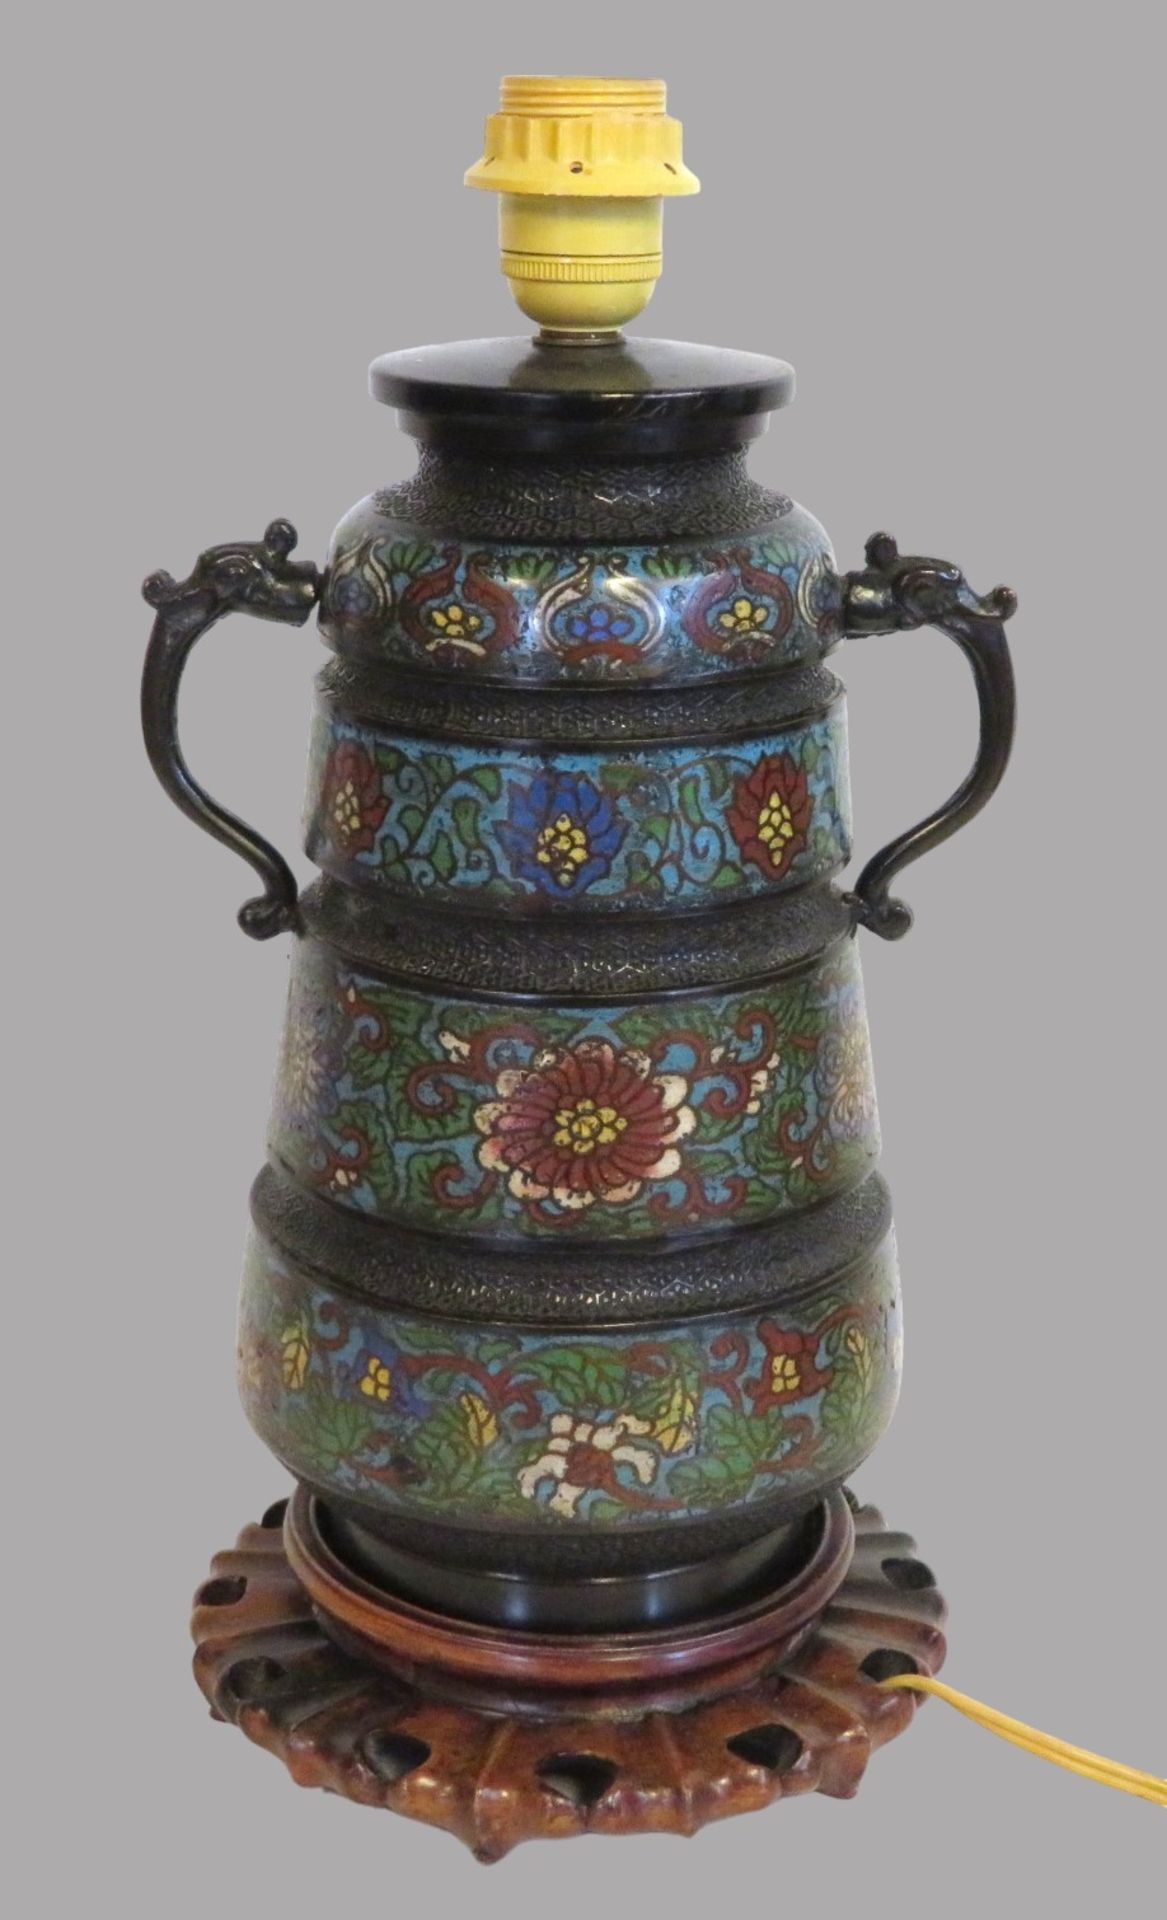 Dekorative Henkelvase, China, 19. Jahrhundert, Cloisonné, farbiger Zellenschmelz, seitliche Handhab - Image 2 of 3